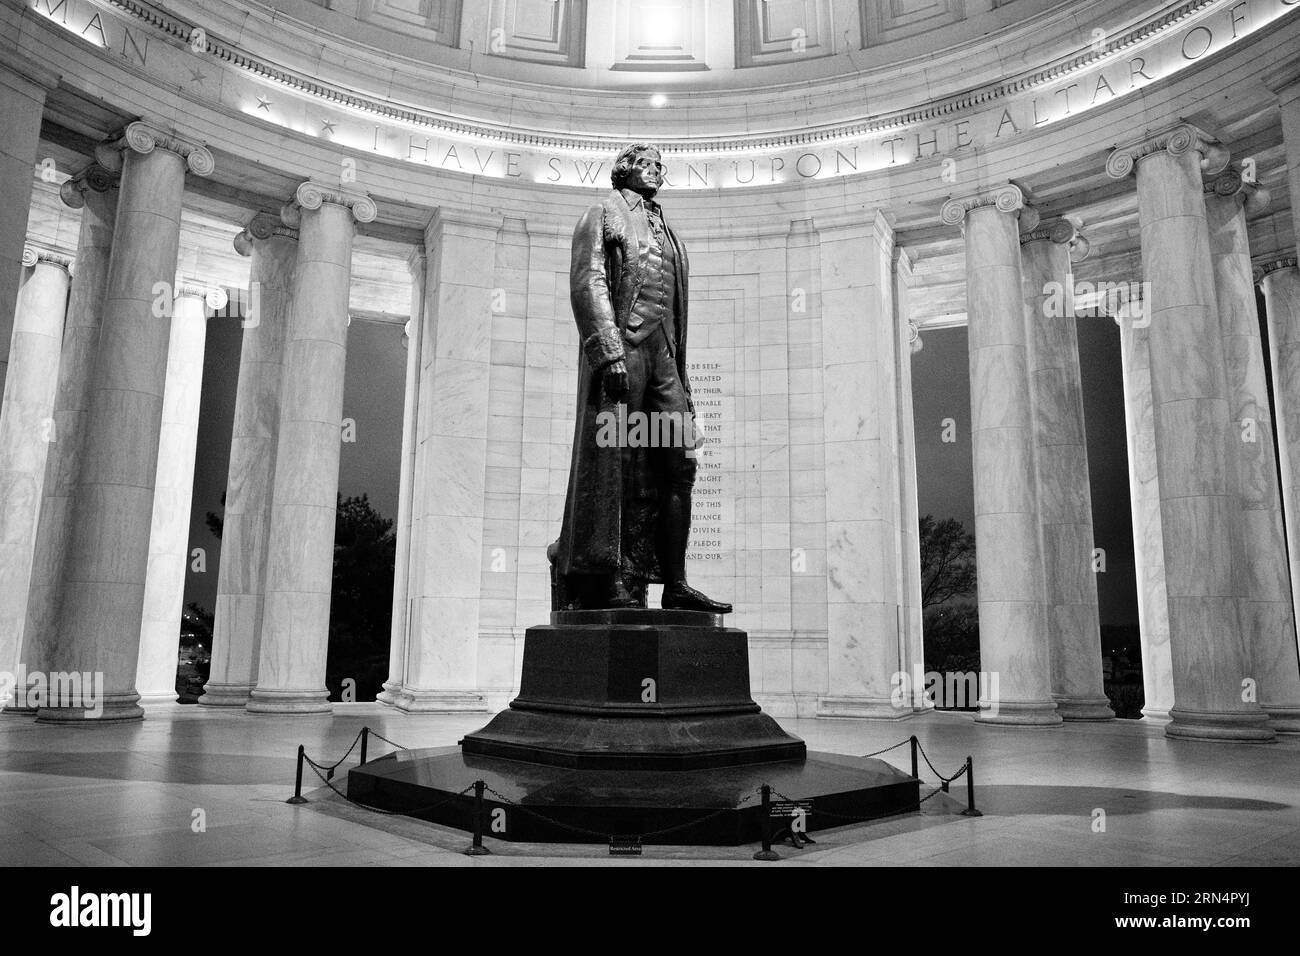 WASHINGTON DC, Stati Uniti - Una fotografia in bianco e nero del Jefferson Memorial. Il Jefferson Memorial è un omaggio iconico al terzo presidente degli Stati Uniti, Thomas Jefferson. Affacciato sul bacino di Tidal, questo monumento neoclassico testimonia il contributo di Jefferson ai principi fondanti della nazione. Foto Stock